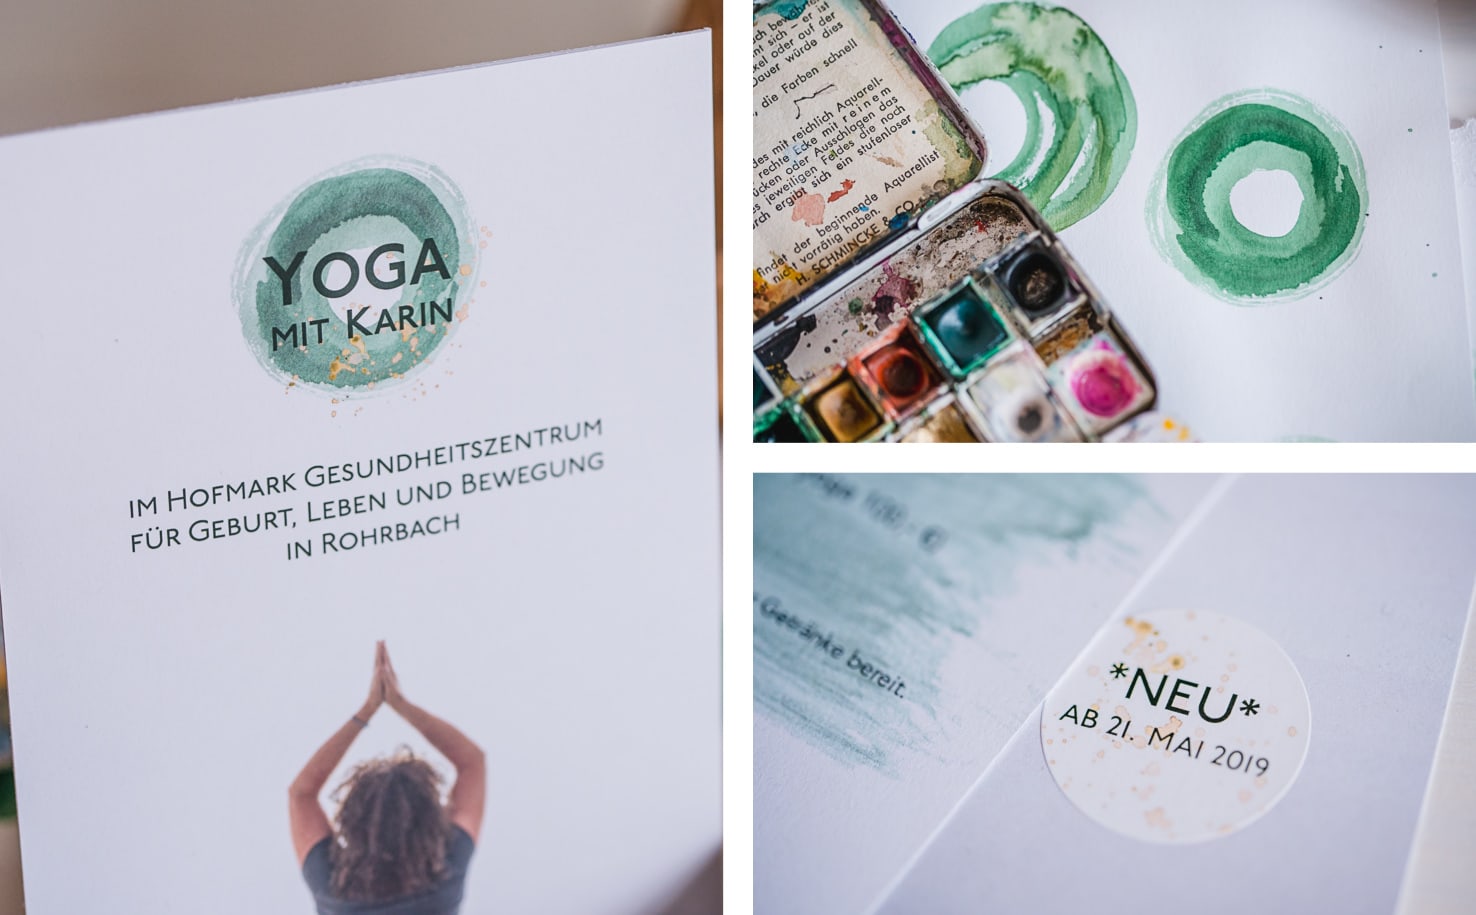 Grafikdesign, Logodesign und Fotografie in einem Yoga Flyer von Jung und Wild design aus Scheyern, Pfaffenhofen, München, Ingolstadt